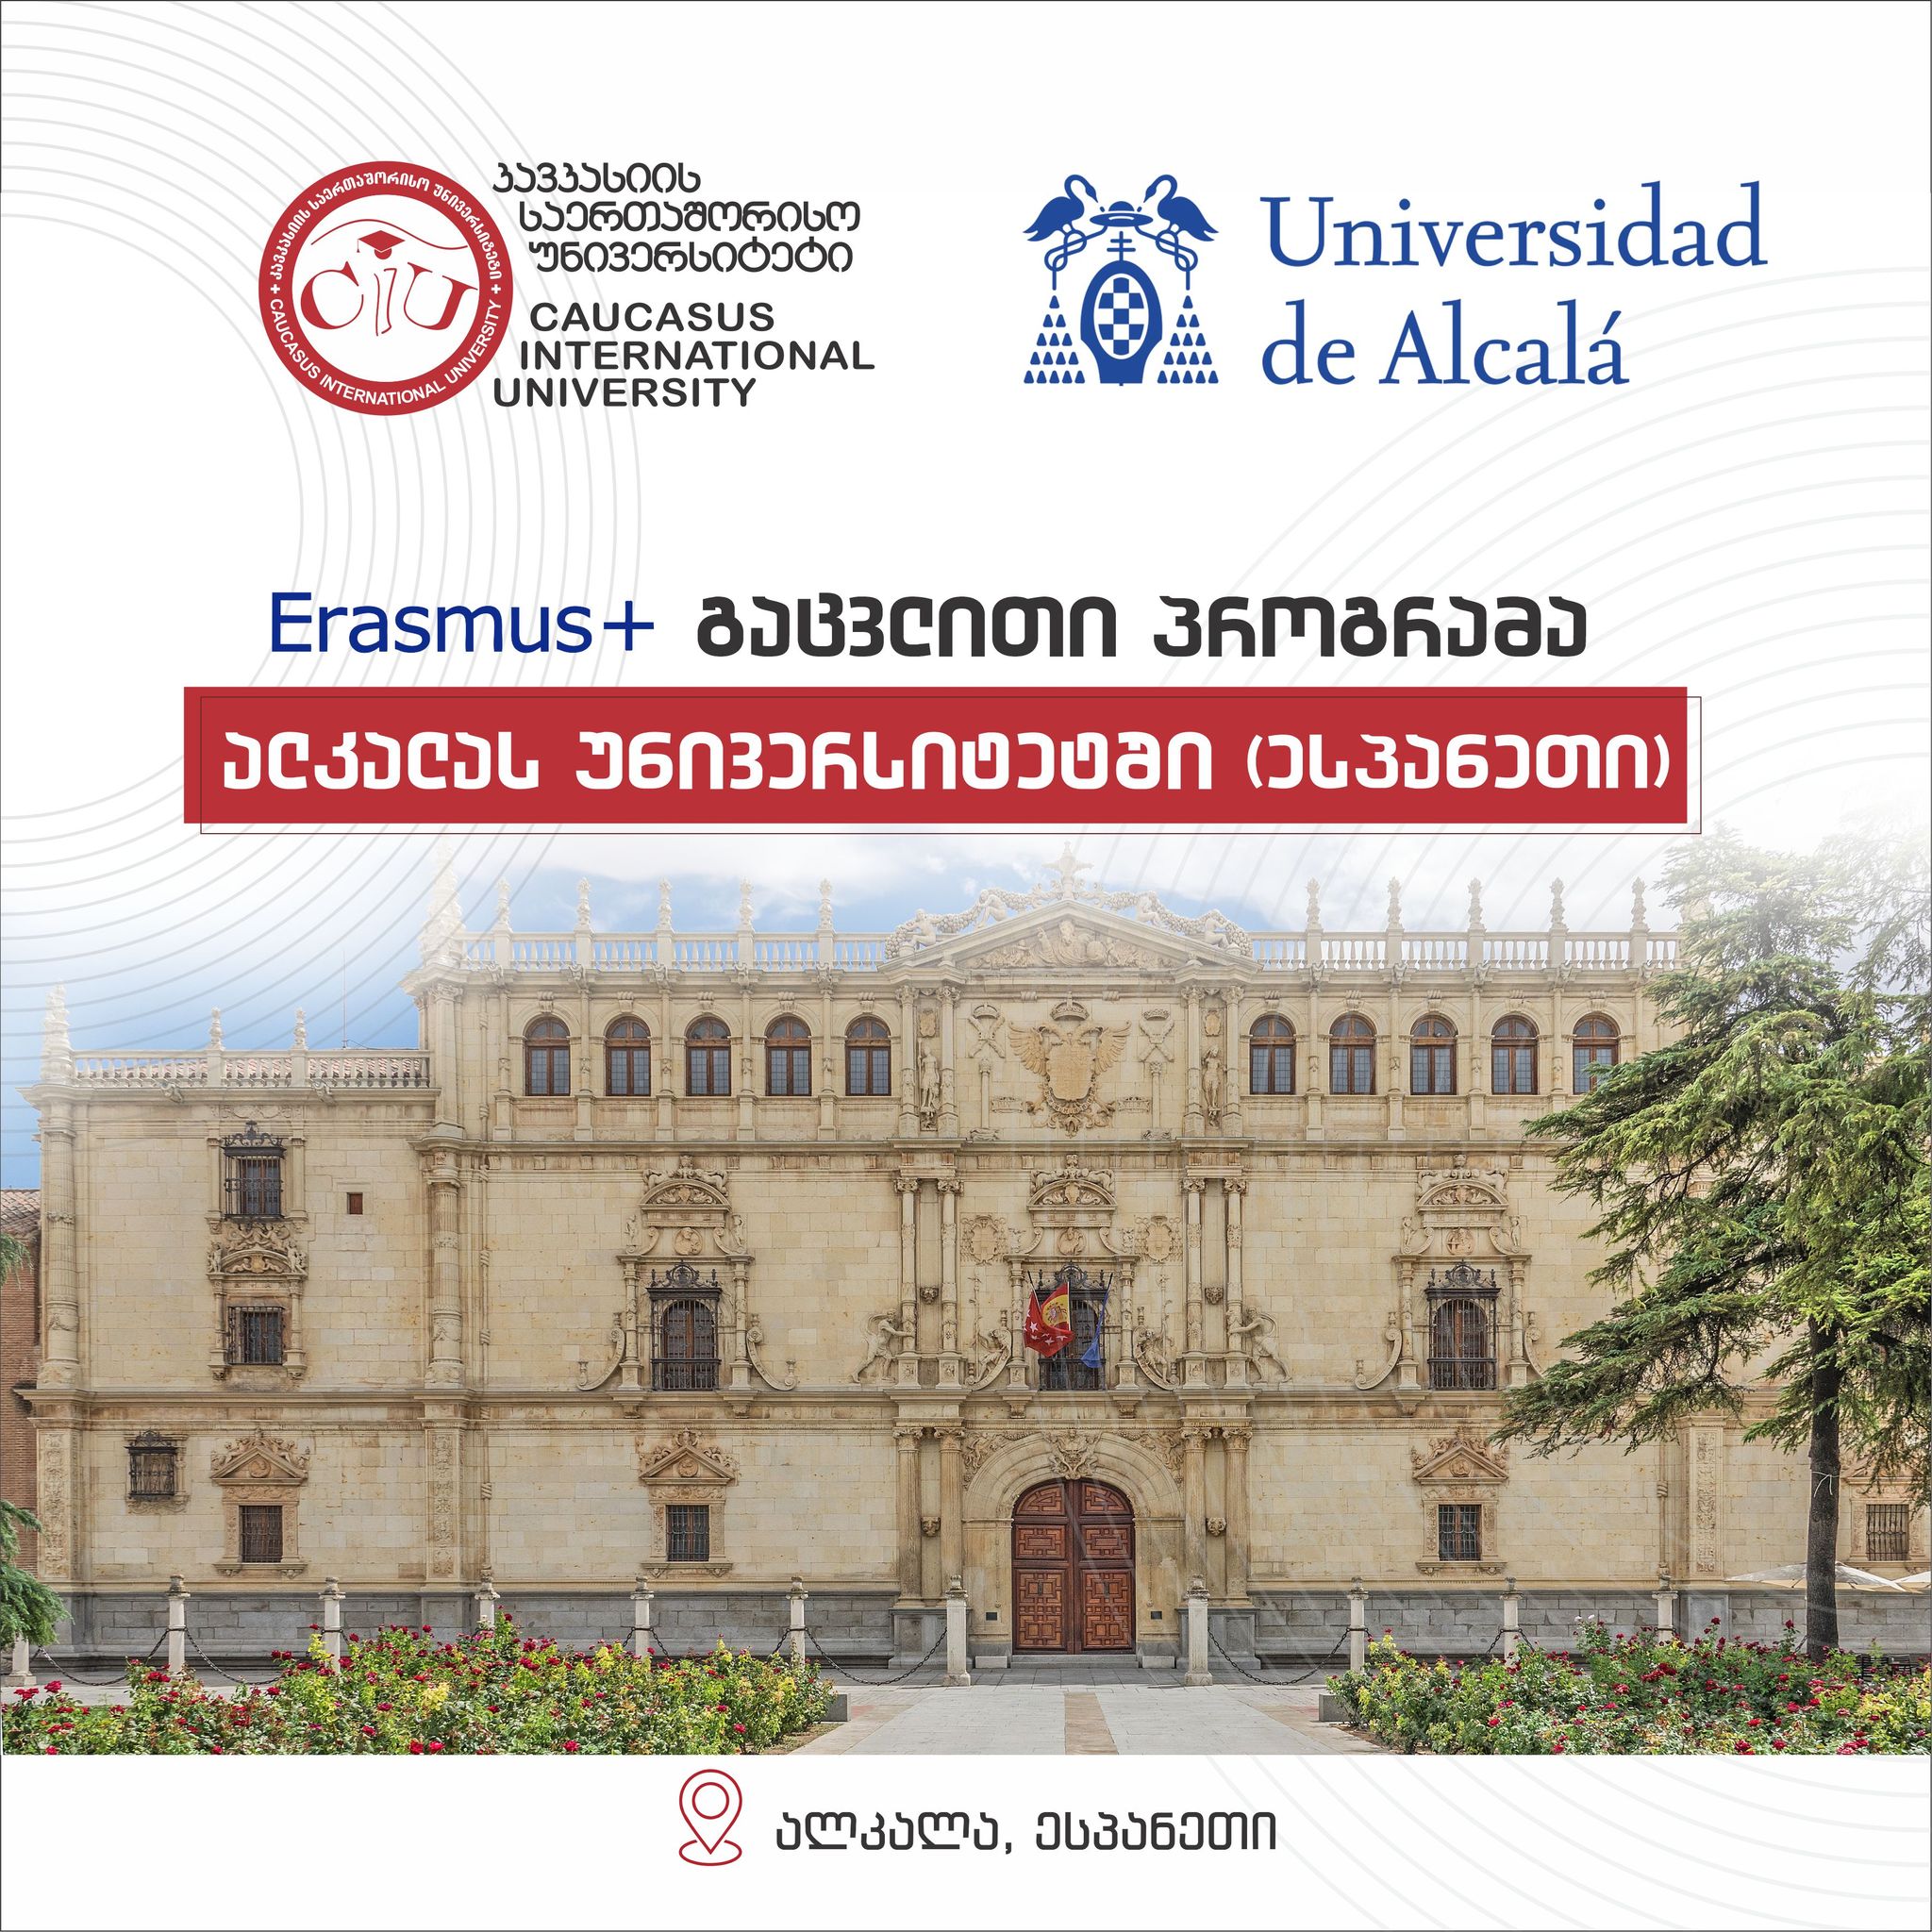 CIU აცხადებს სტუდენტების მიღებას სემესტრულ გაცვლით პროგრამაზე პარტნიორ ალკალას უნივერსიტეტში (ესპანეთი) სრული დაფინანსებით